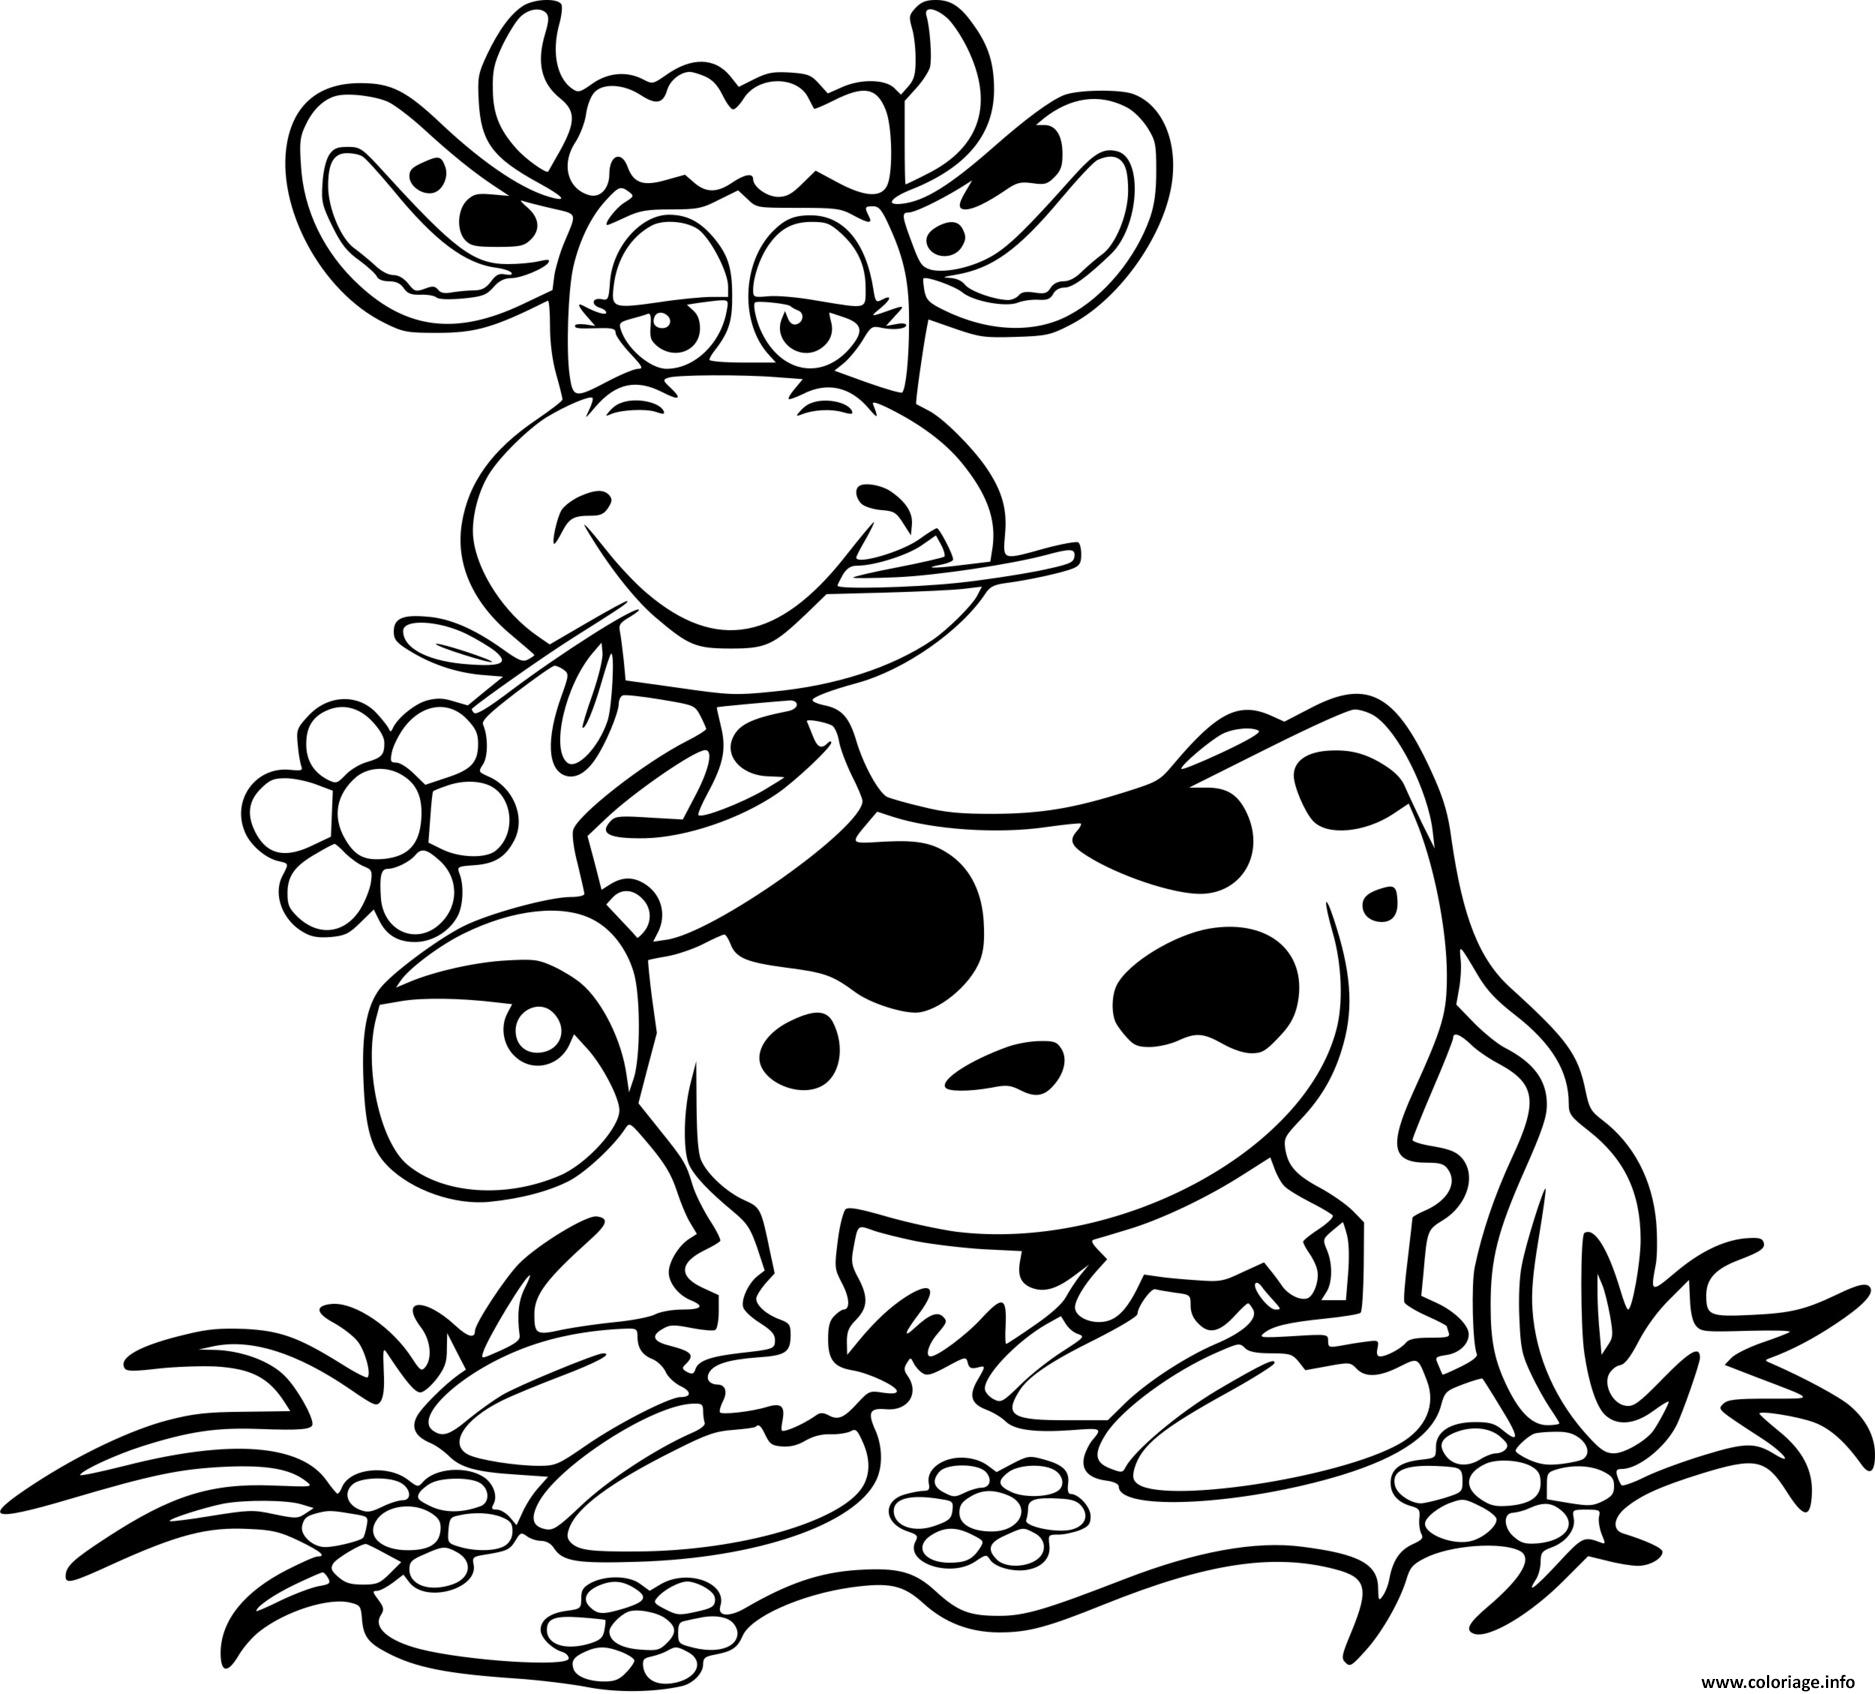 Dessin vache rigolote avec une fleur et une cloche Coloriage Gratuit à Imprimer